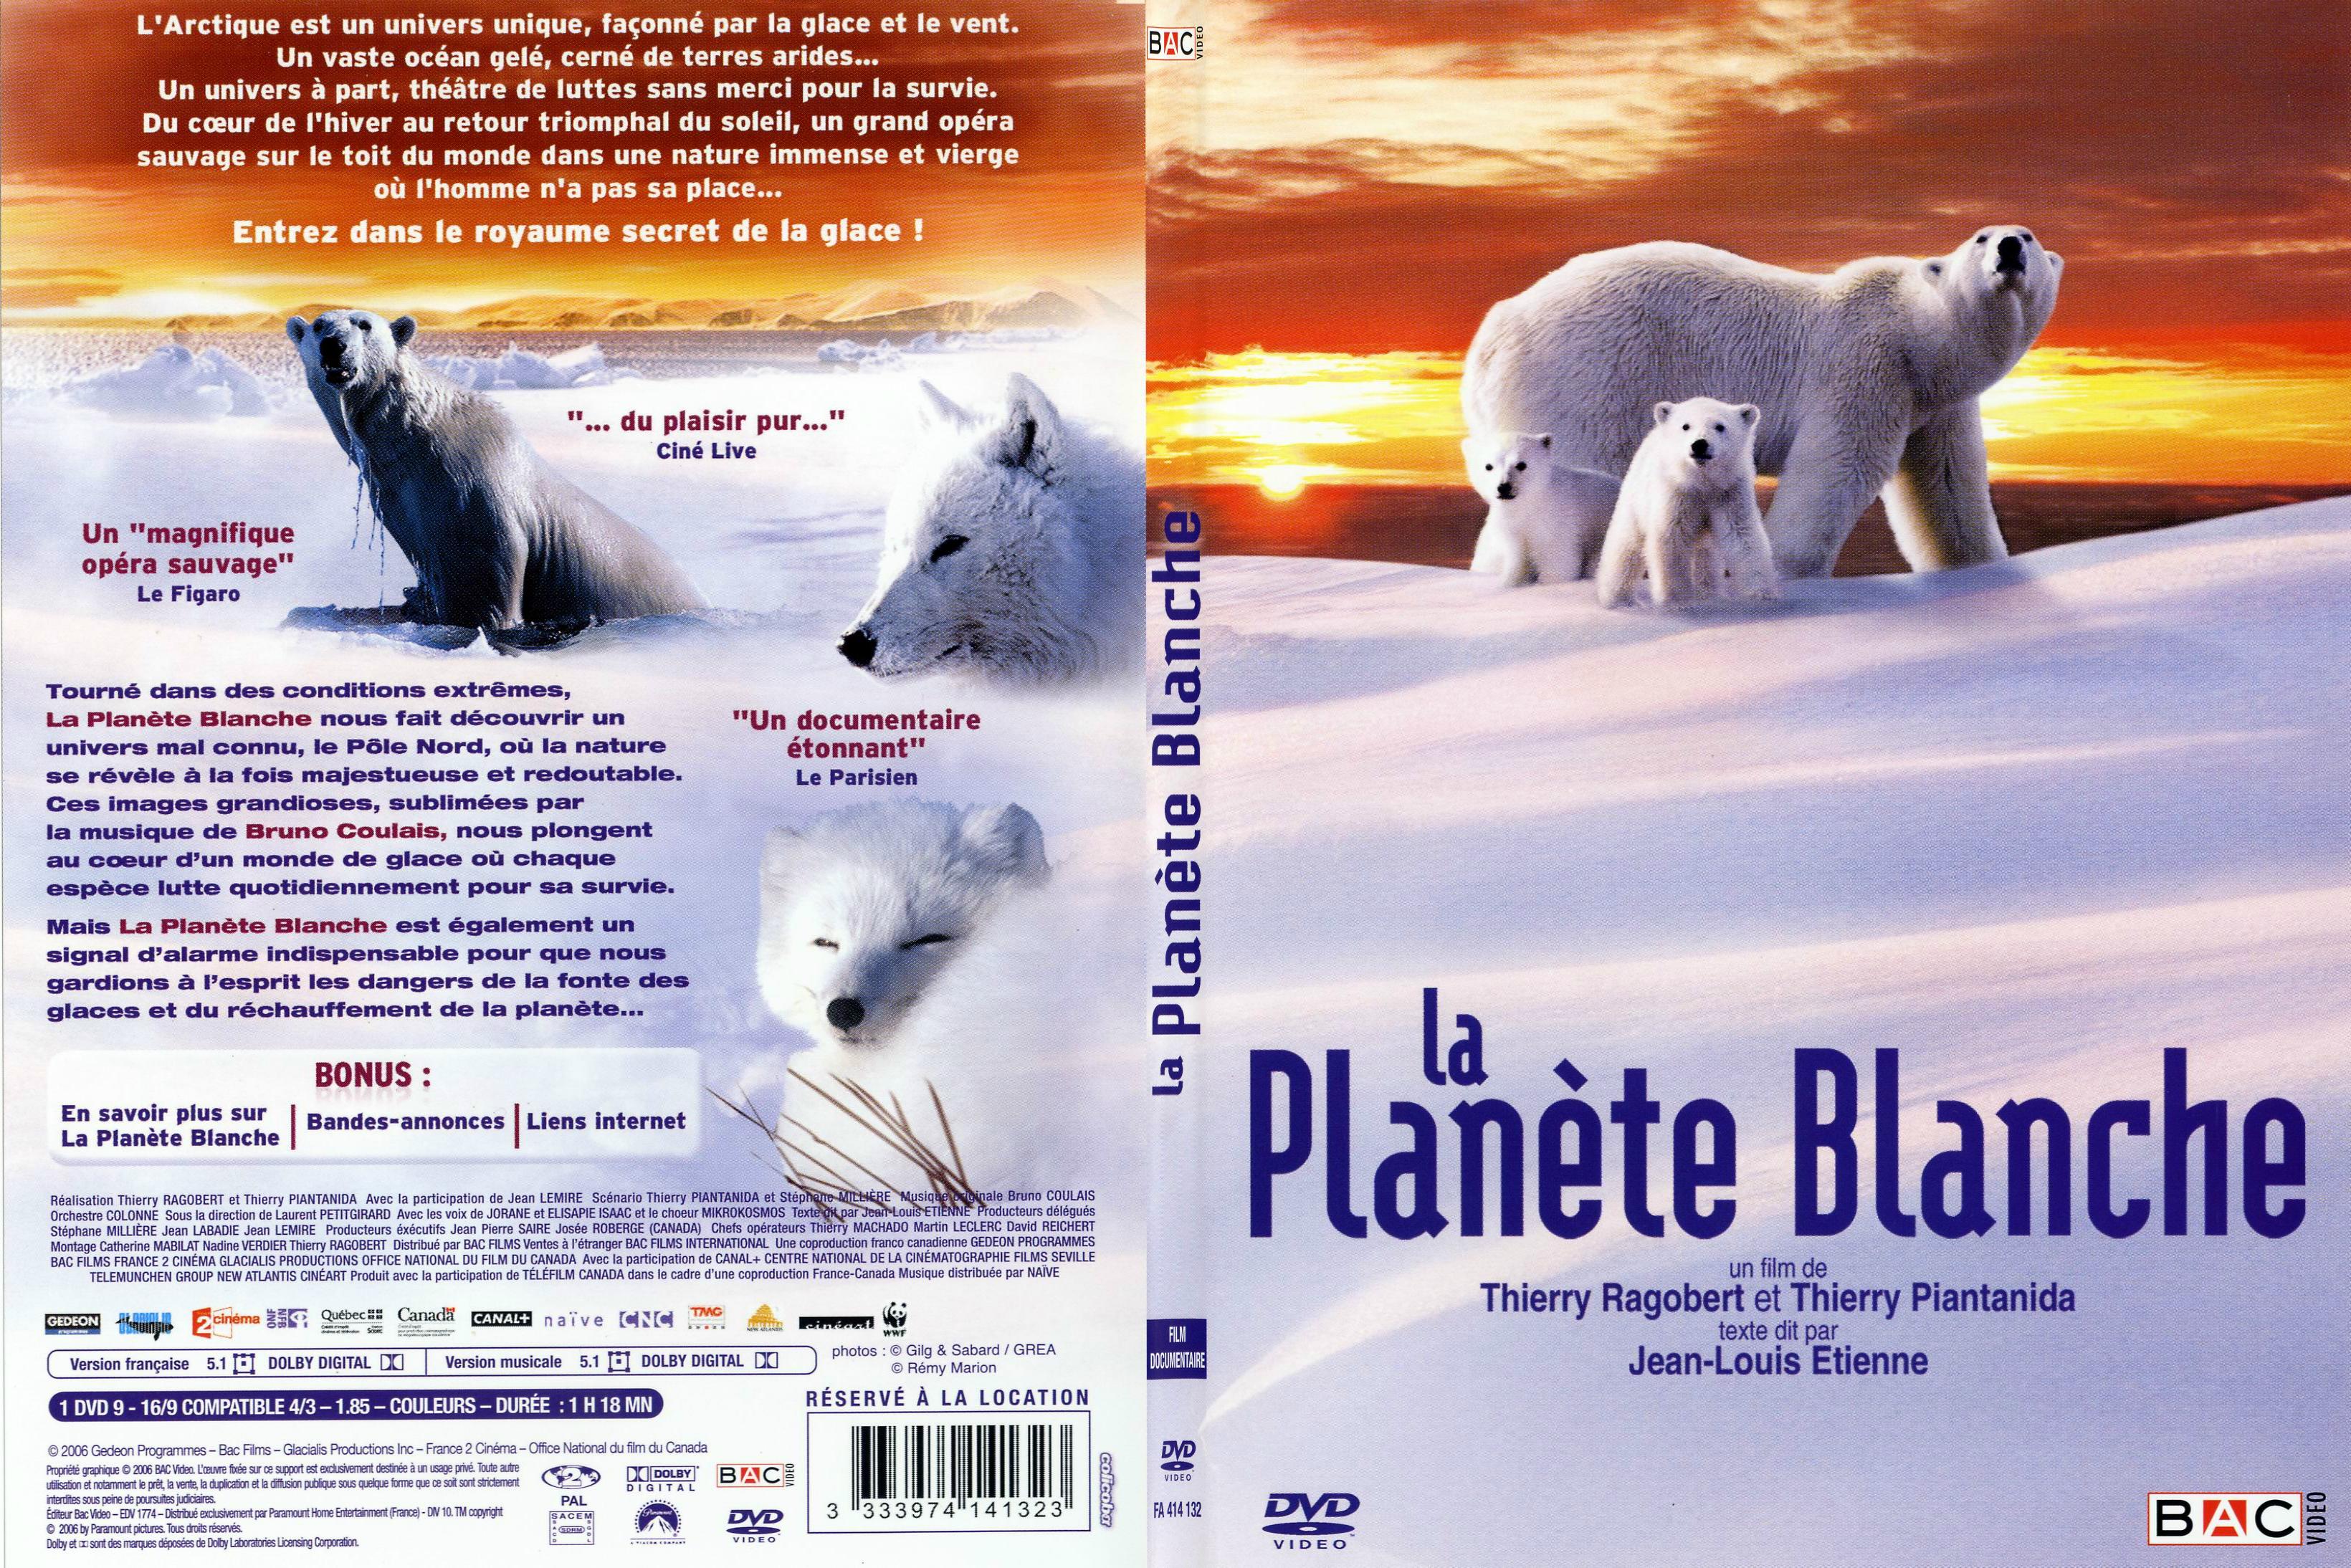 Jaquette DVD La planete blanche - SLIM